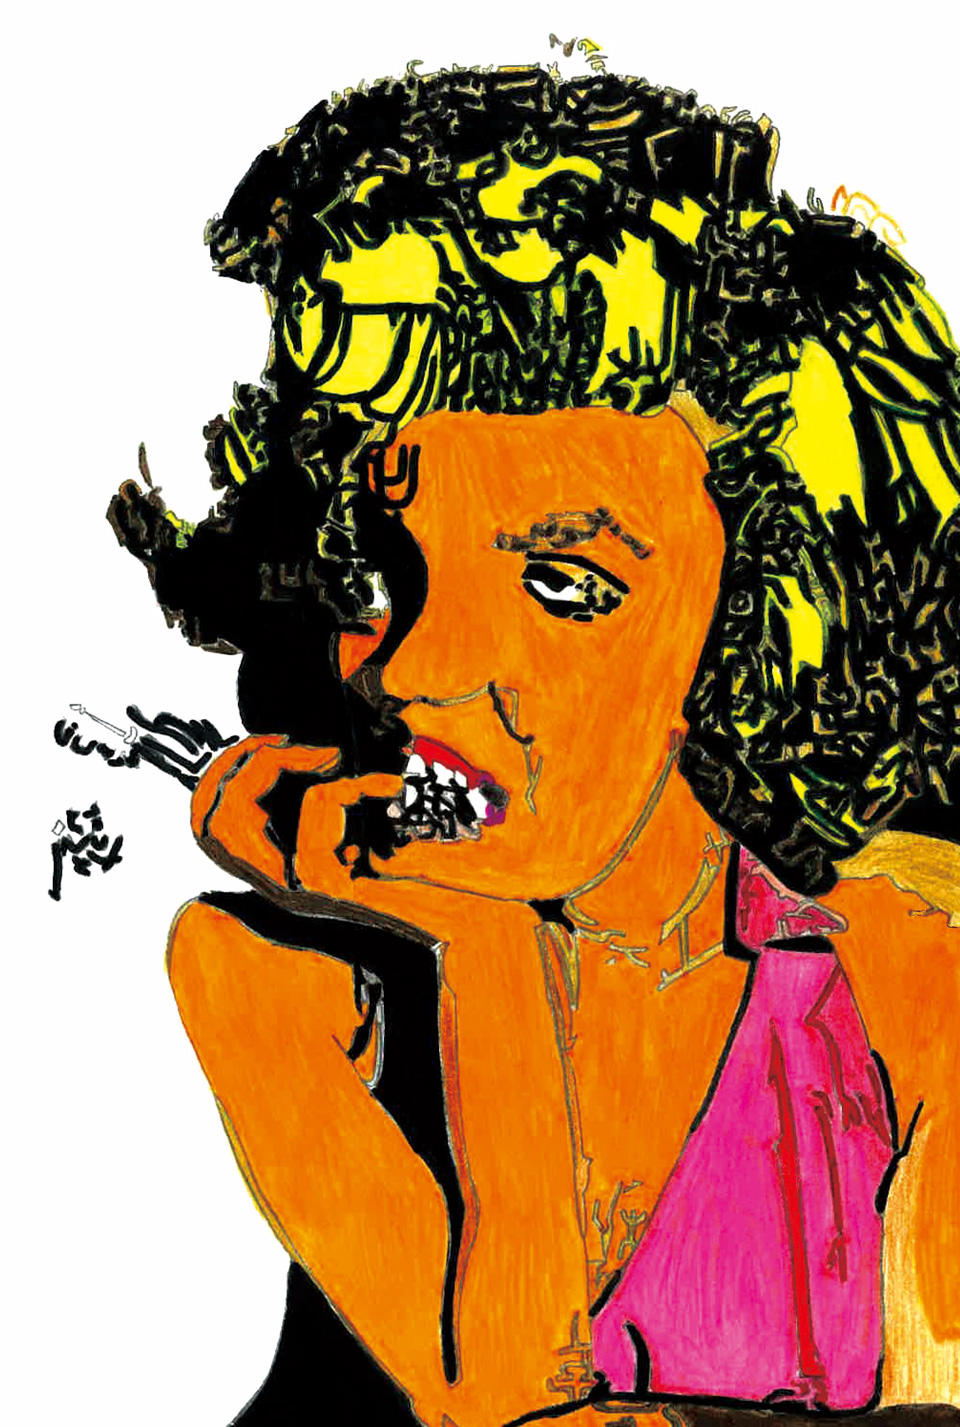 [Works]raitoさんによるマリリン・モンローを描いた作品。カラーペンで着色したもの